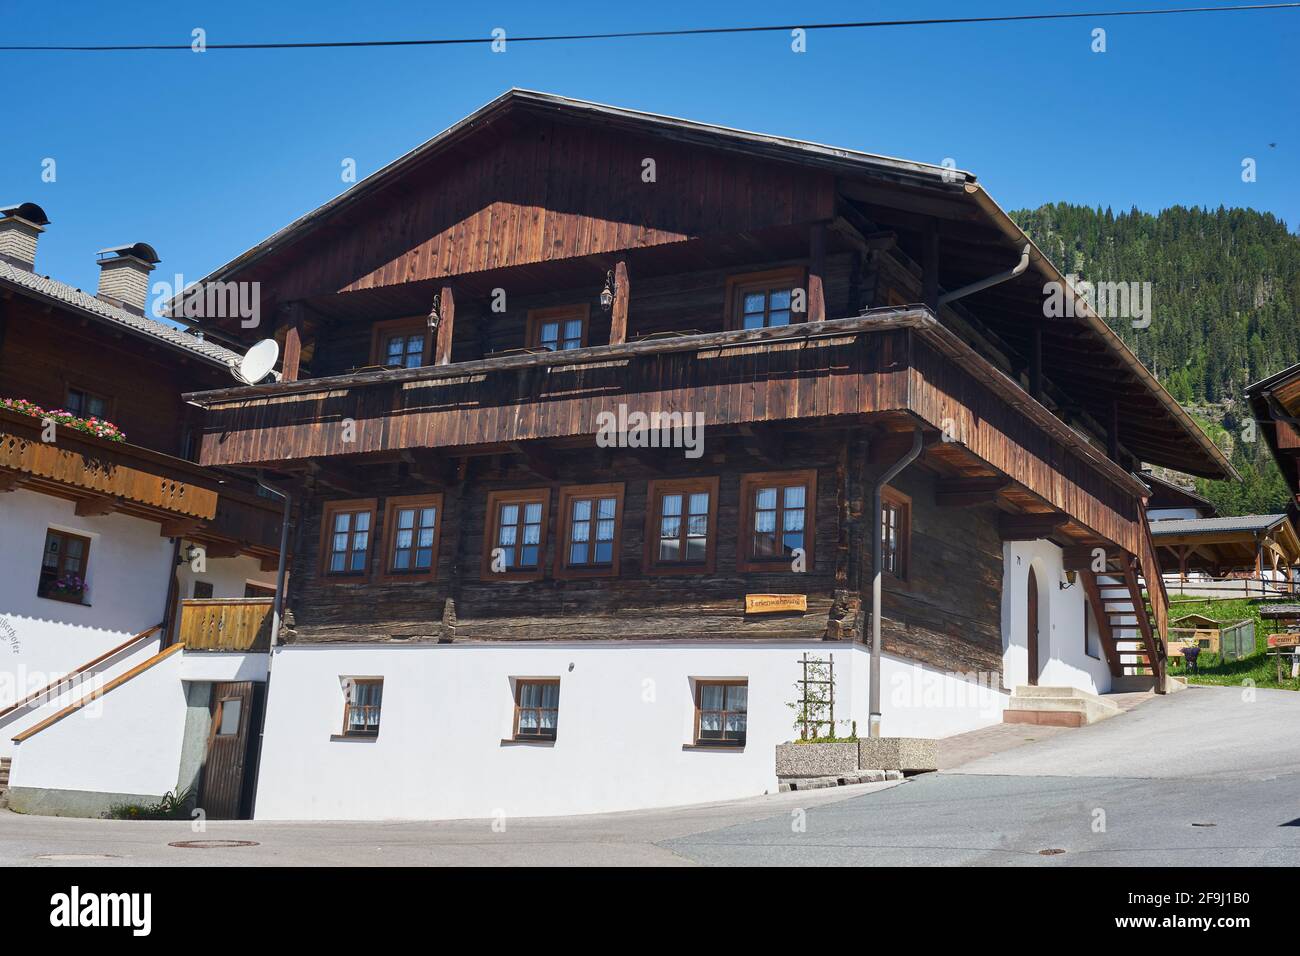 Bauernhaus in Obertilliach, Tiroler Gailtal, Tiroler Lesachtal, Tirol, Österreich Stock Photo